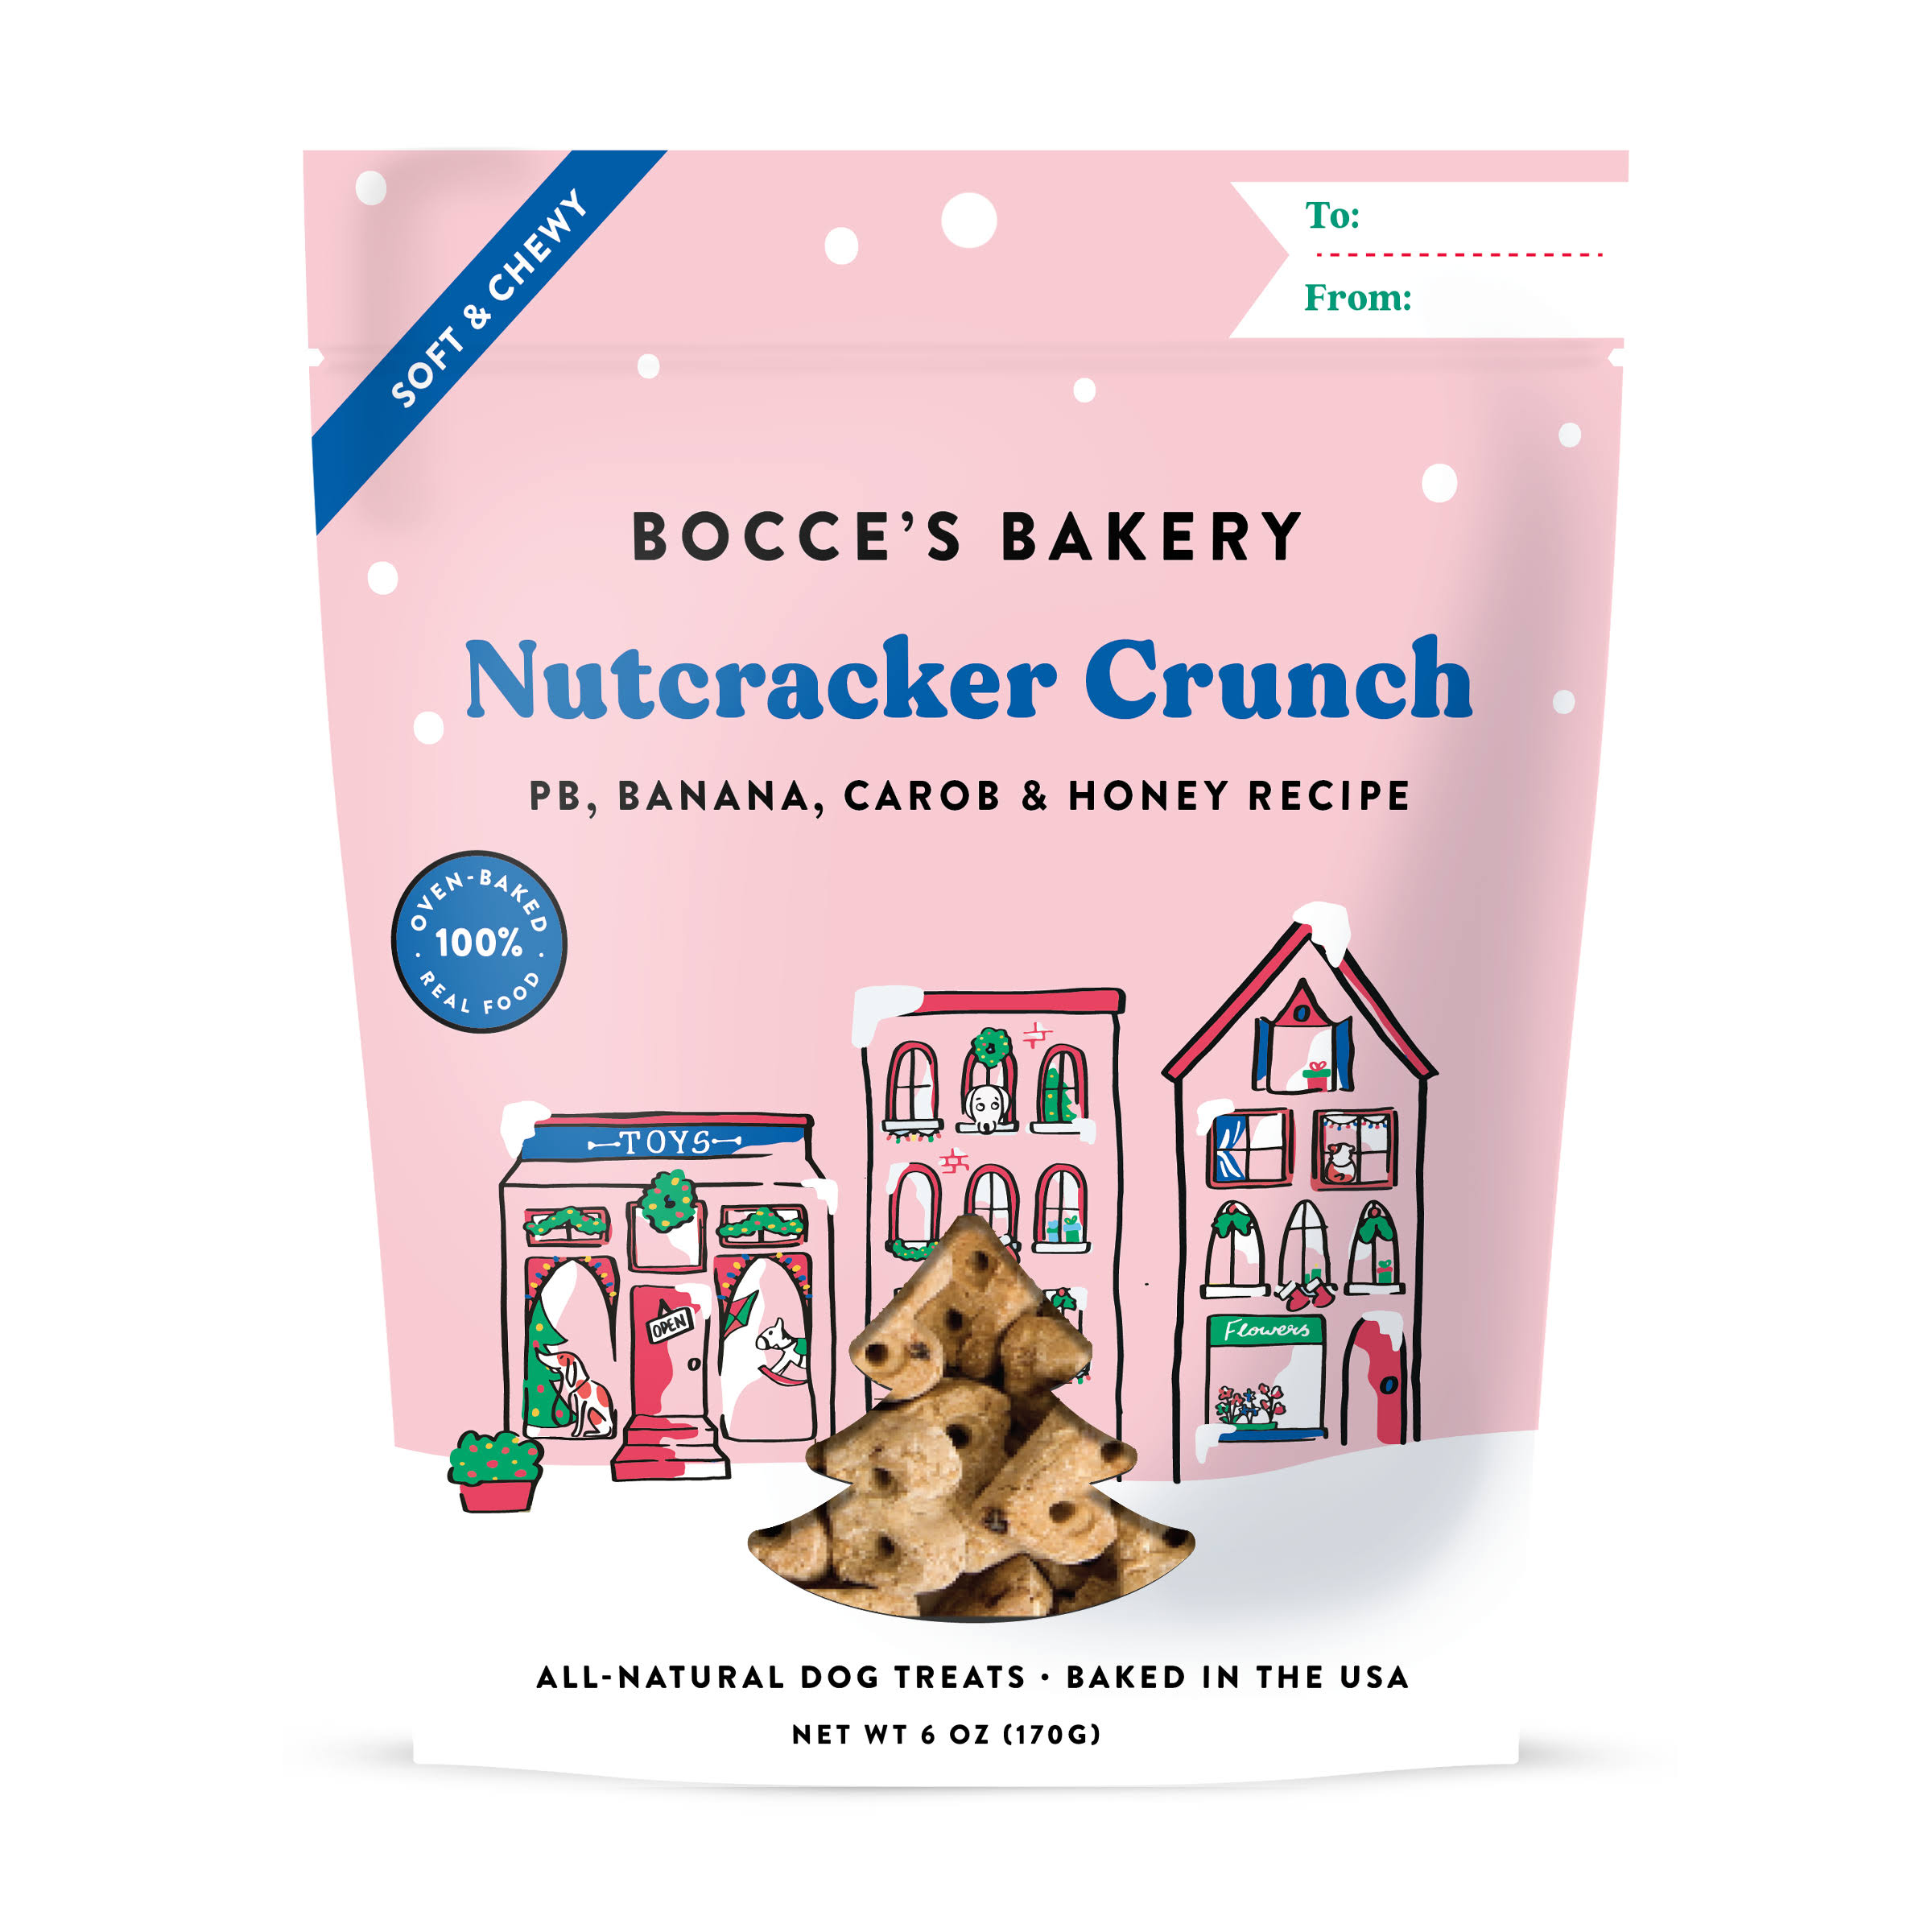 Bocce's Bakery Nutcracker Crunch - Peanut Butter, Banana & Carob - Dog Treats